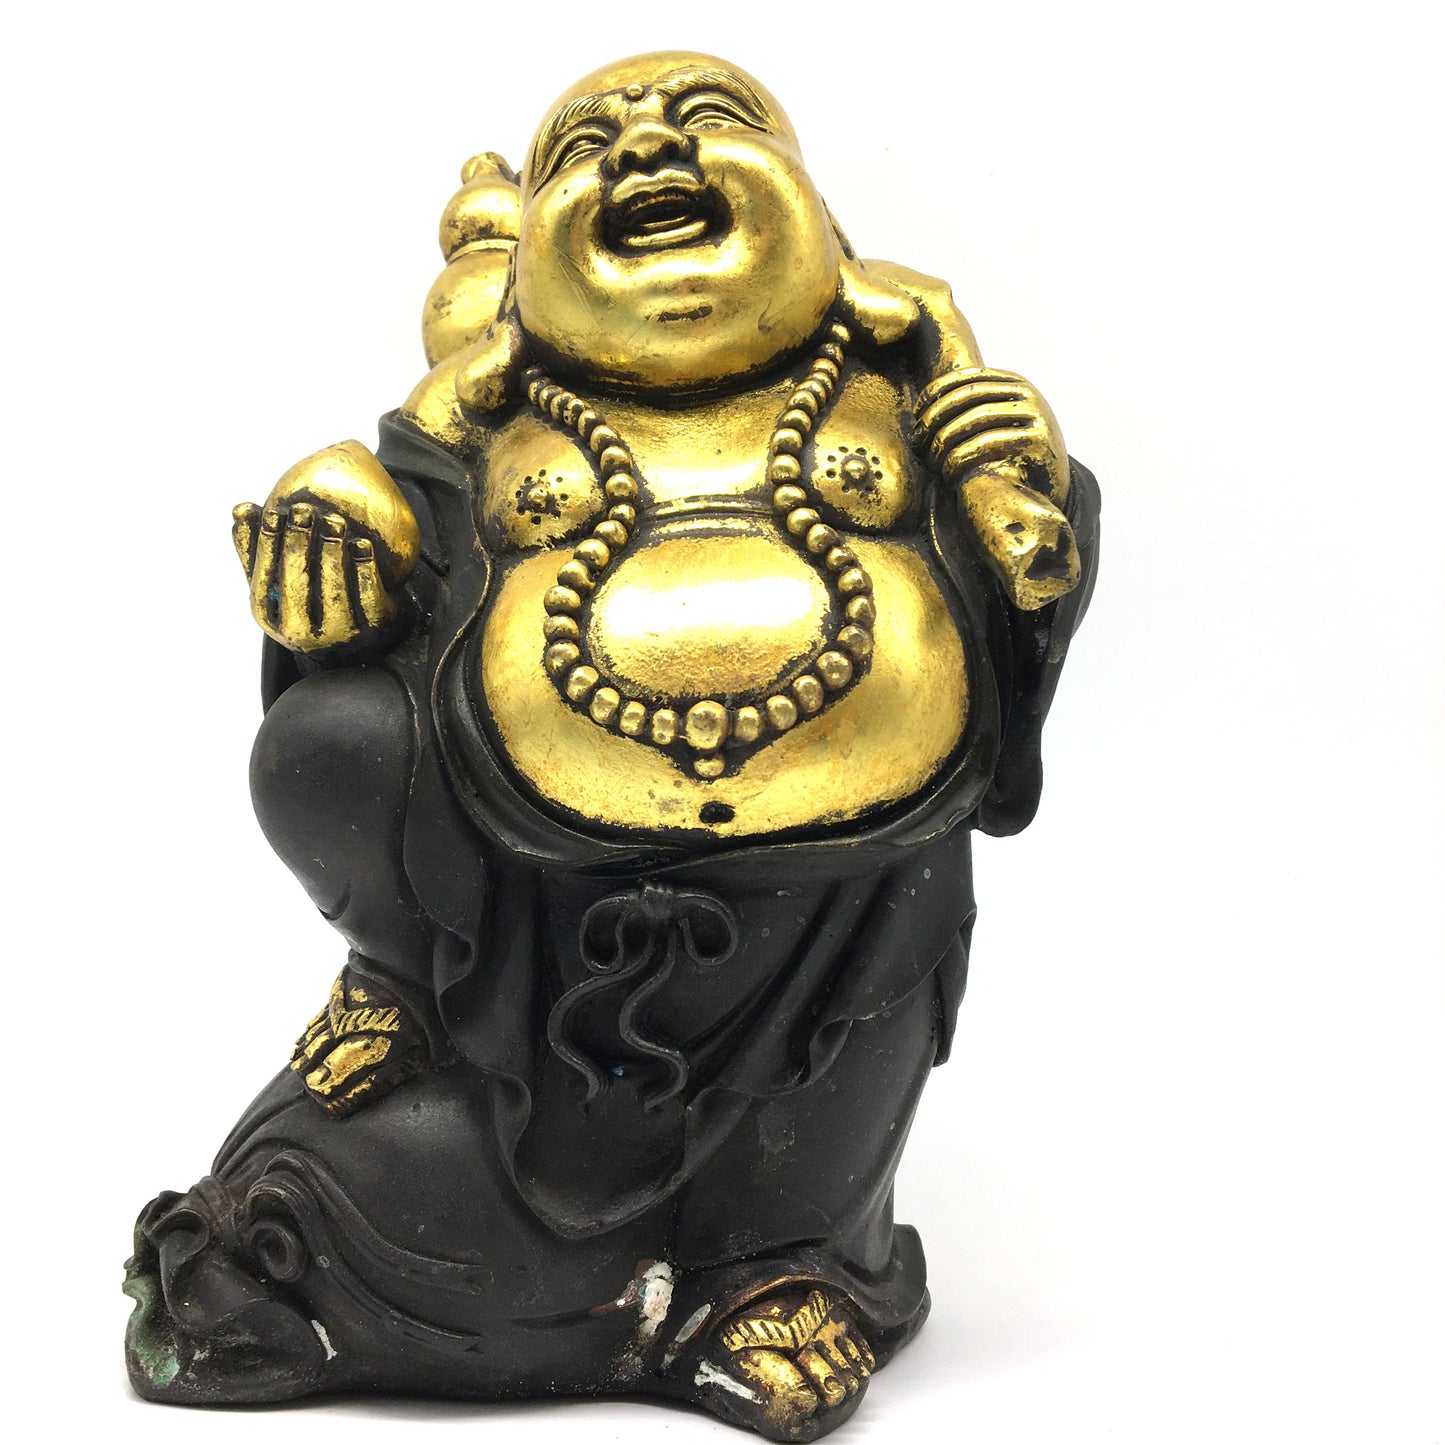 Buddhism Happy Laughing Maitreya Buddha Statue Figurine 9" - Vintage New